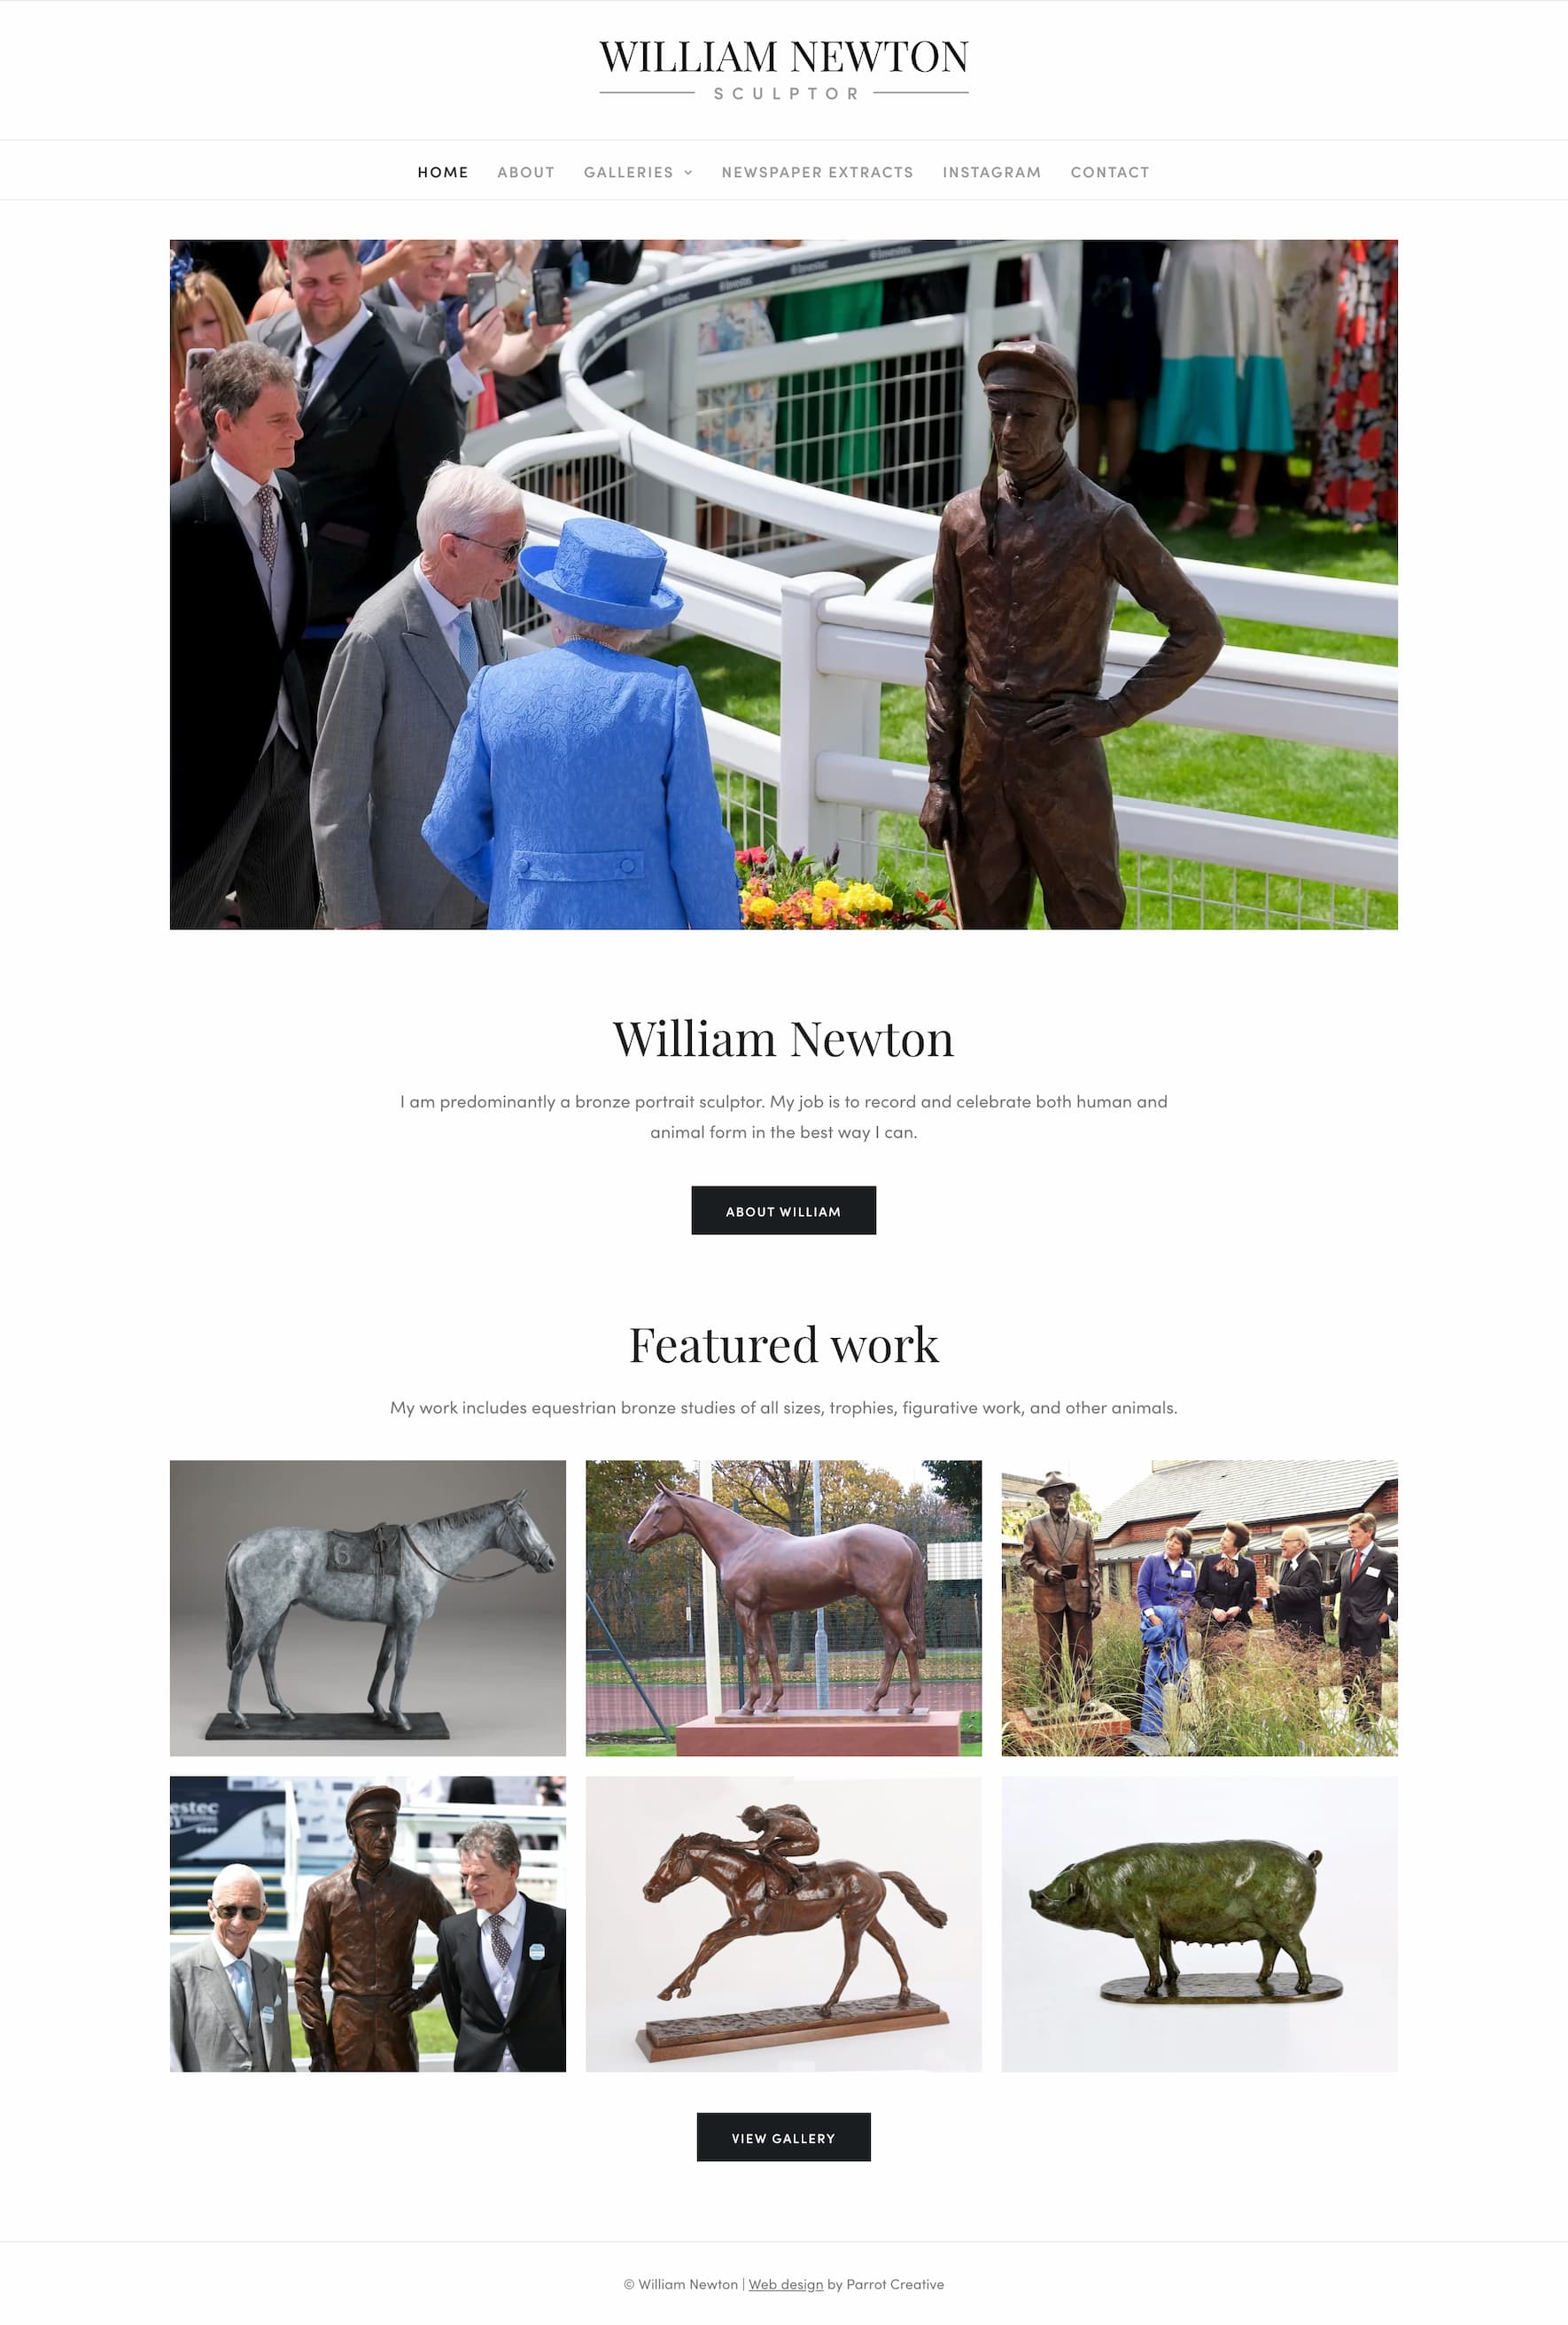 William Newton Sculptor website homepage design